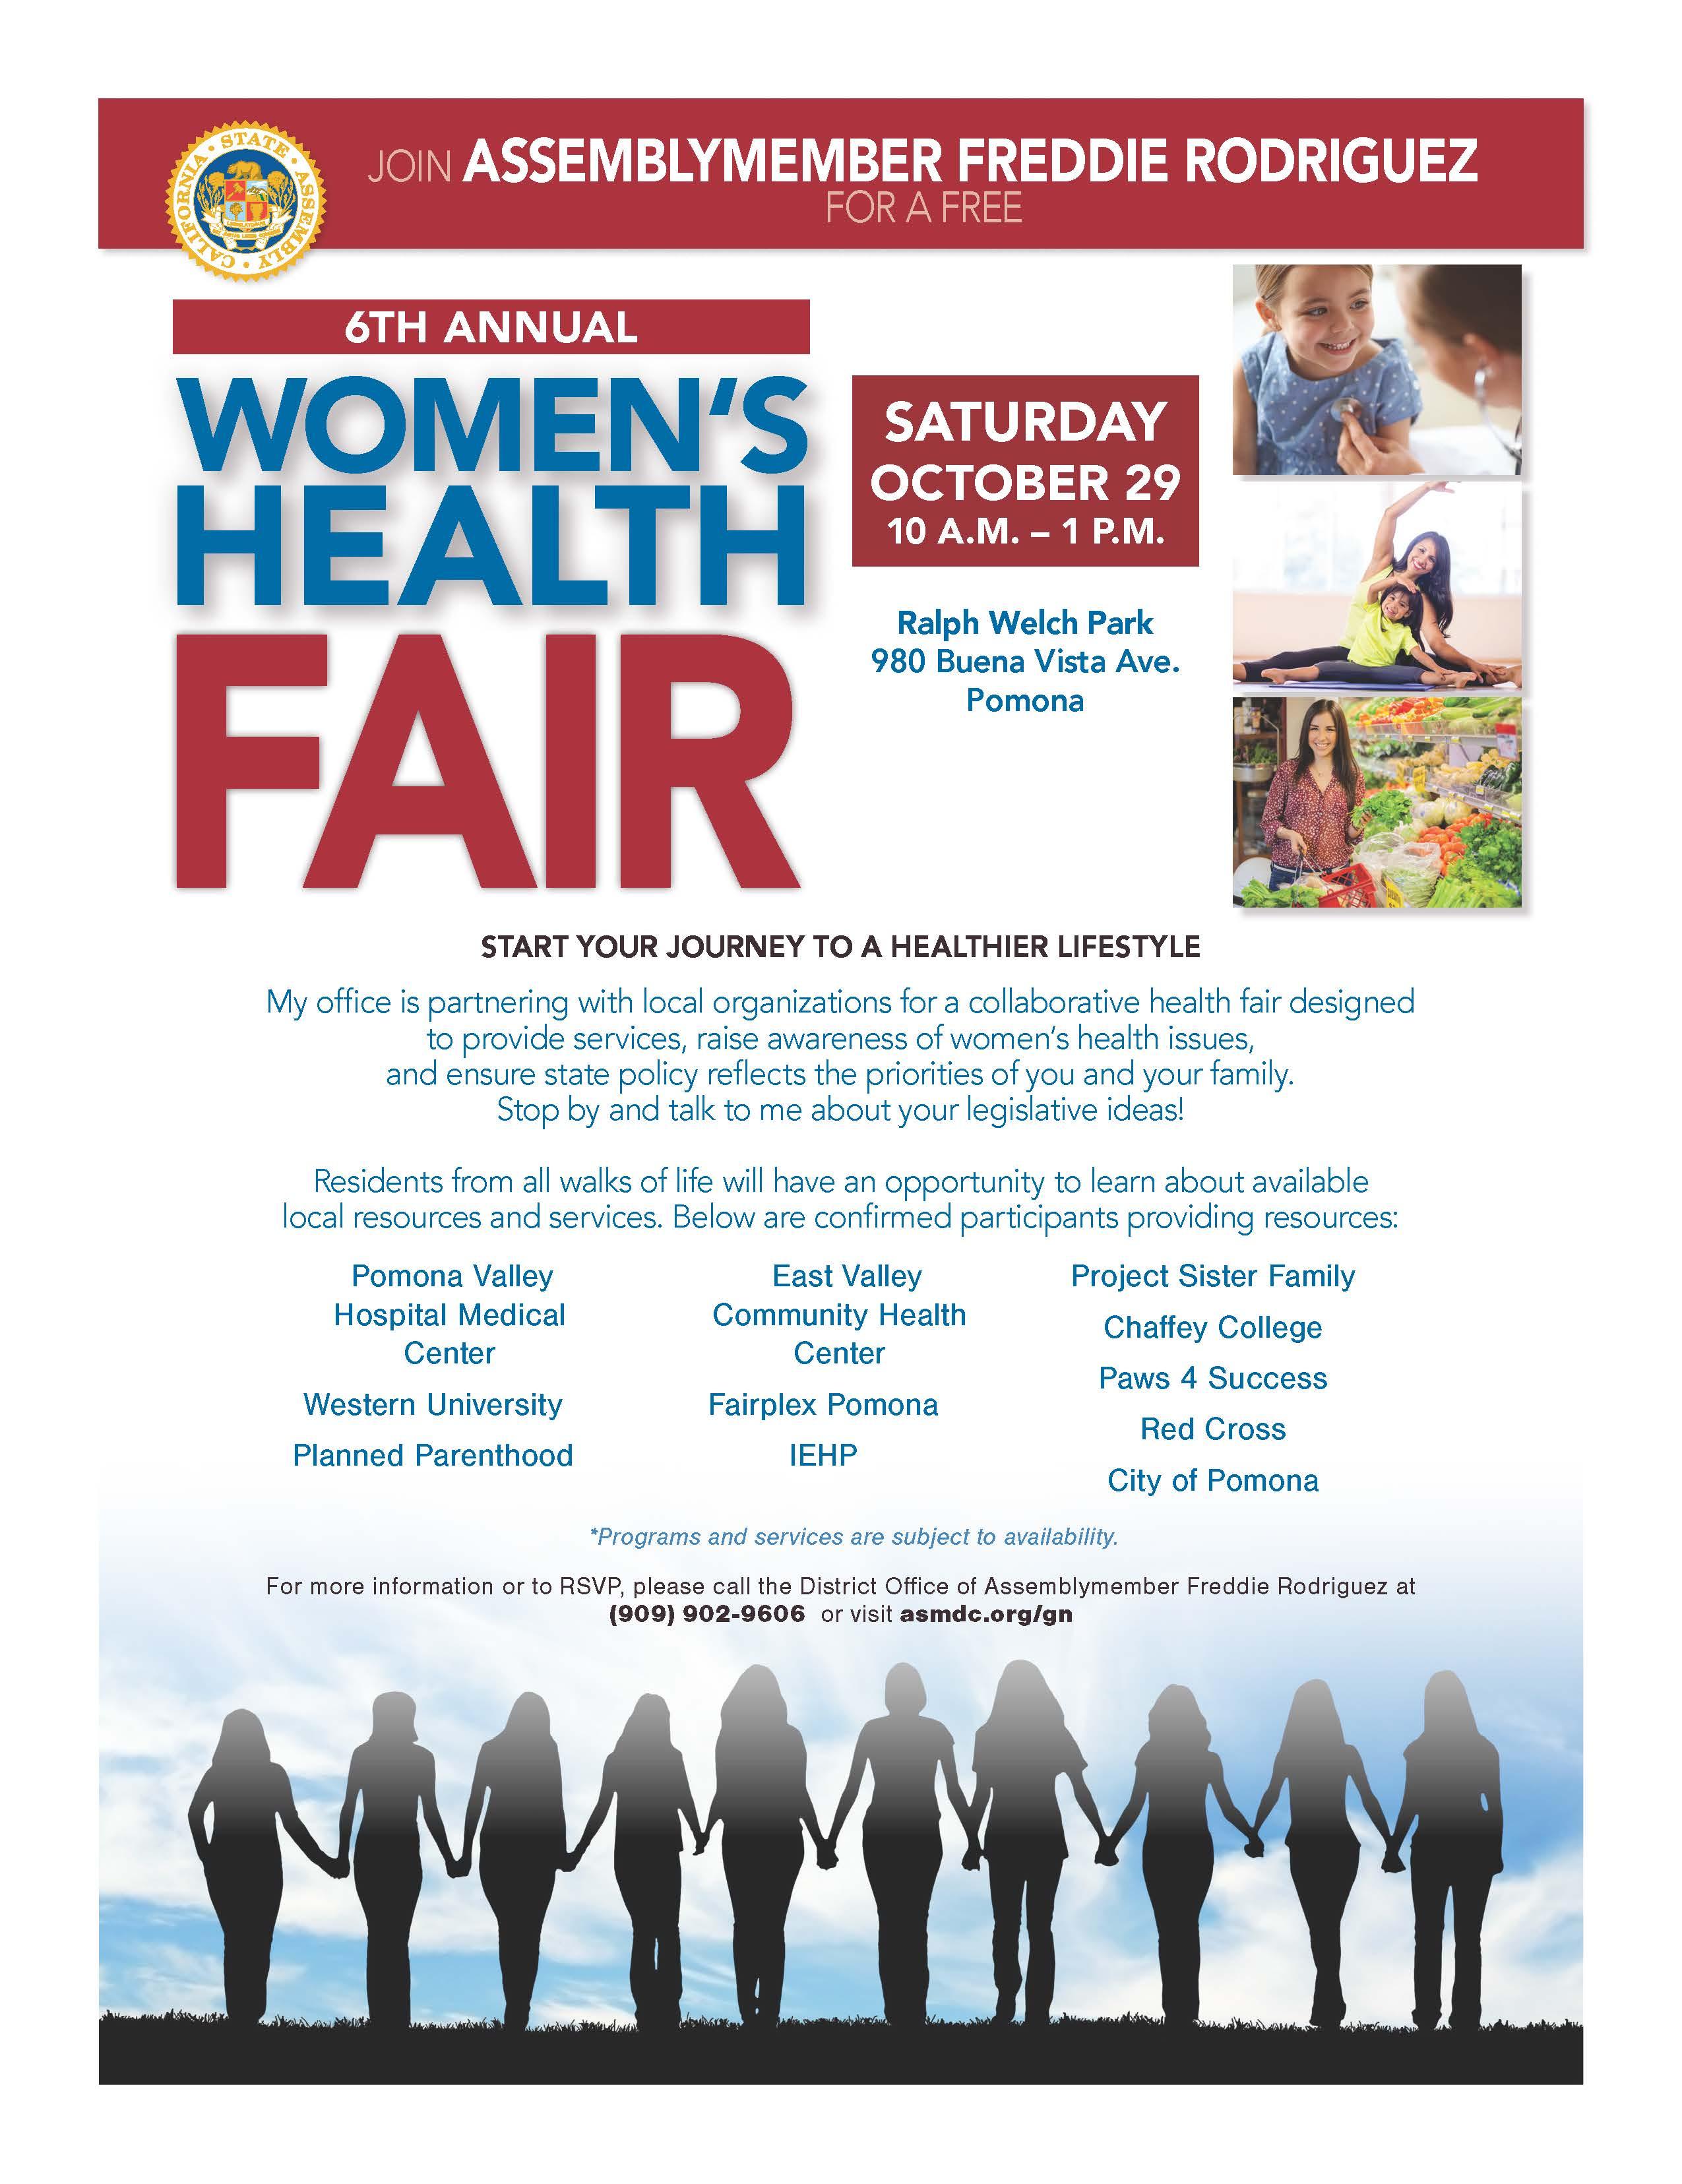 6th Annual Women's Health Fair, Saturday October 29th, 2022